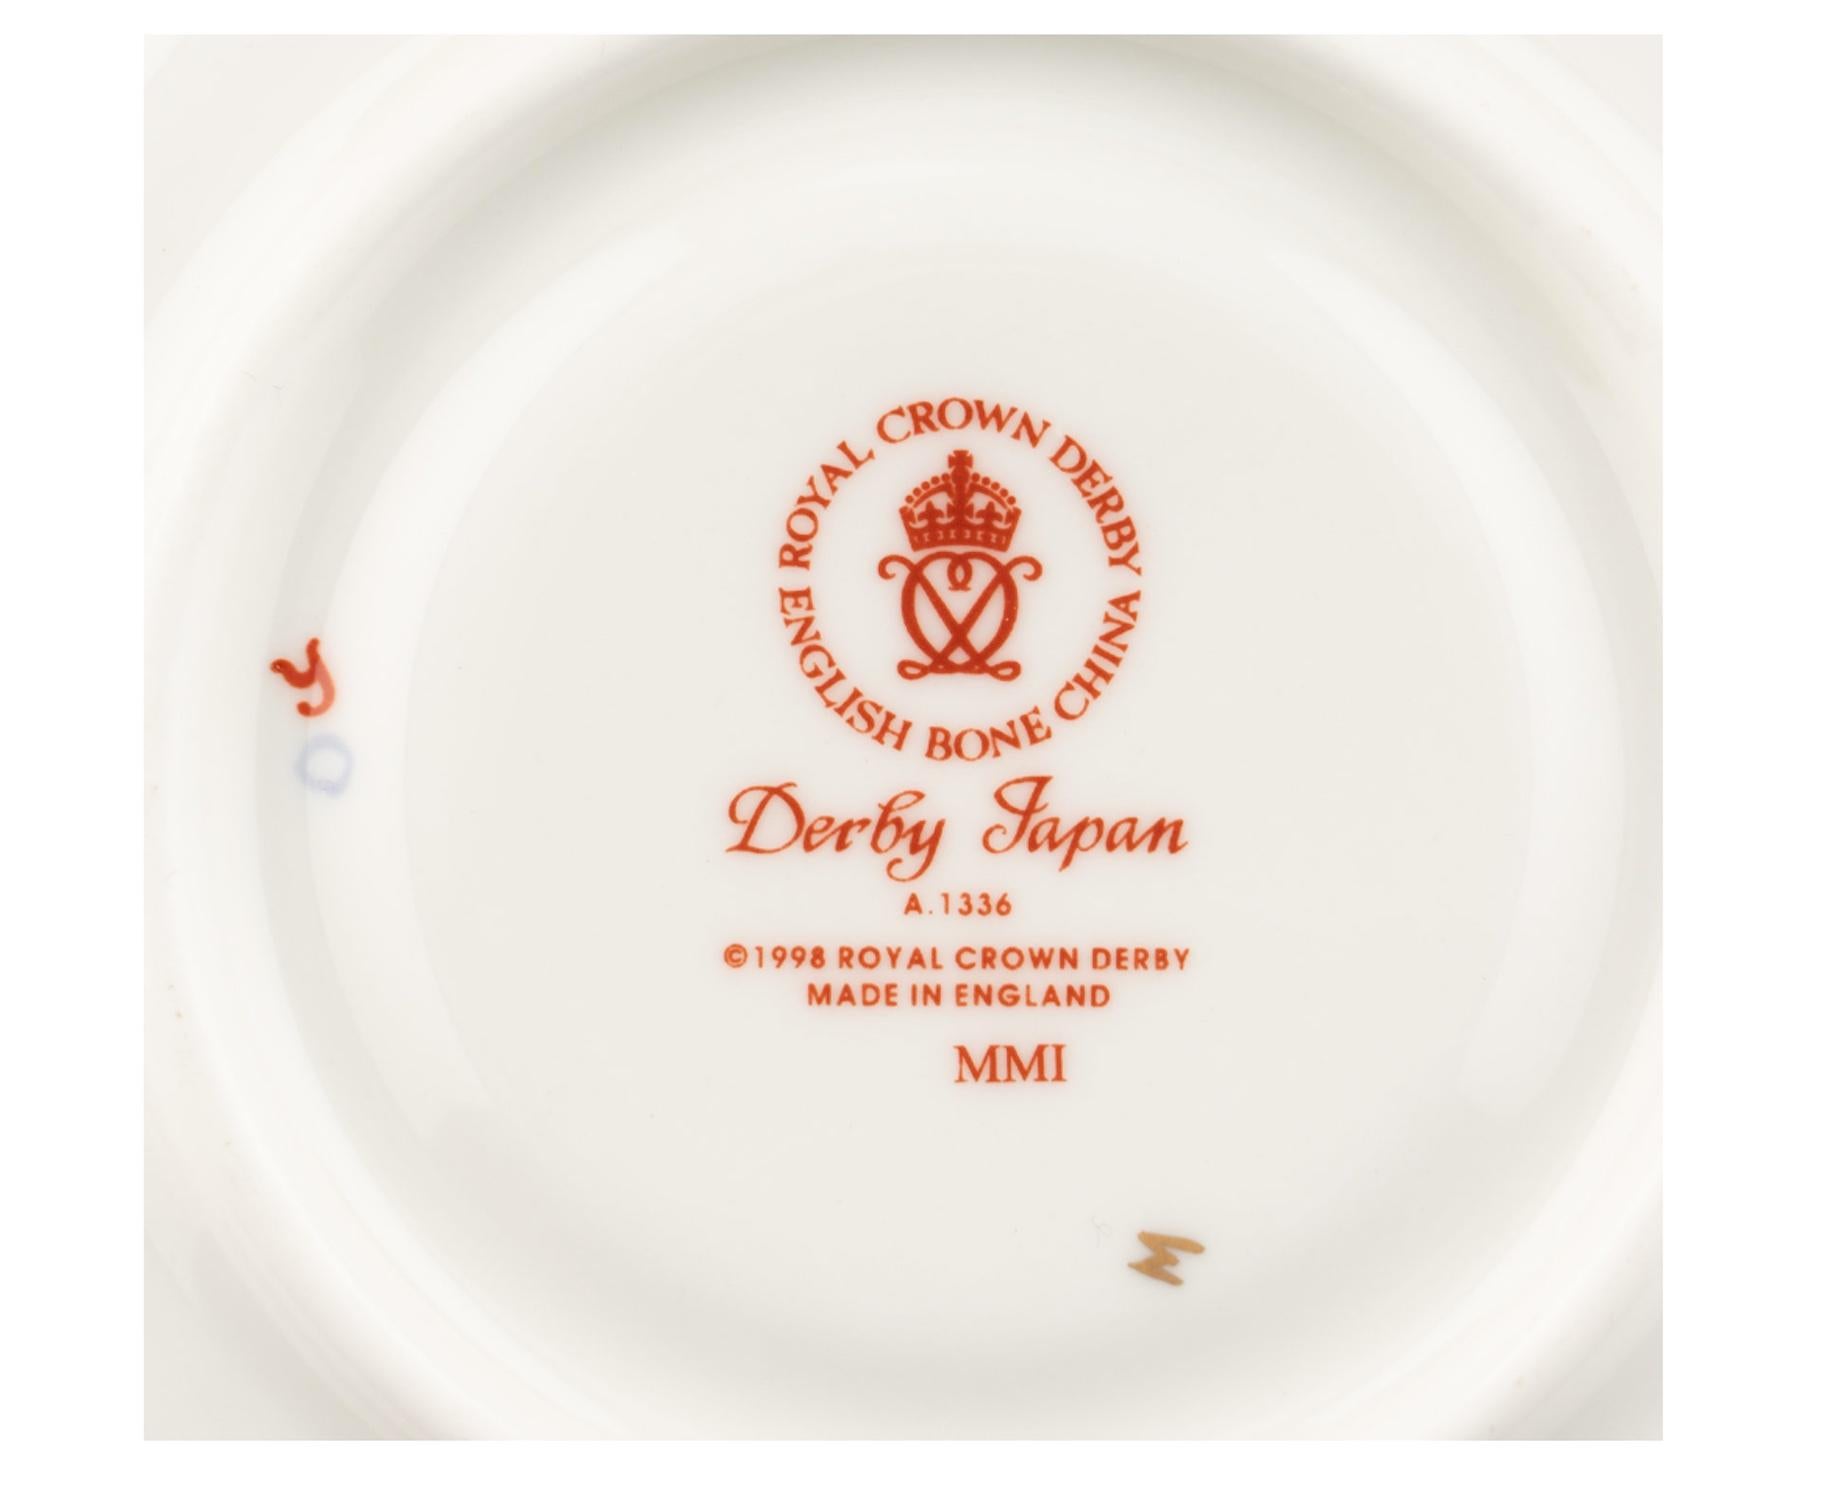 Service de table assemblé en porcelaine et pierre de fer de Royal Crown Derby
19ème/20ème siècle
Motif des rois, avec de légères variations, comprenant :
12 assiettes plates
11 assiettes à déjeuner
12 assiettes à salade (bord façonné)
6 assiettes à